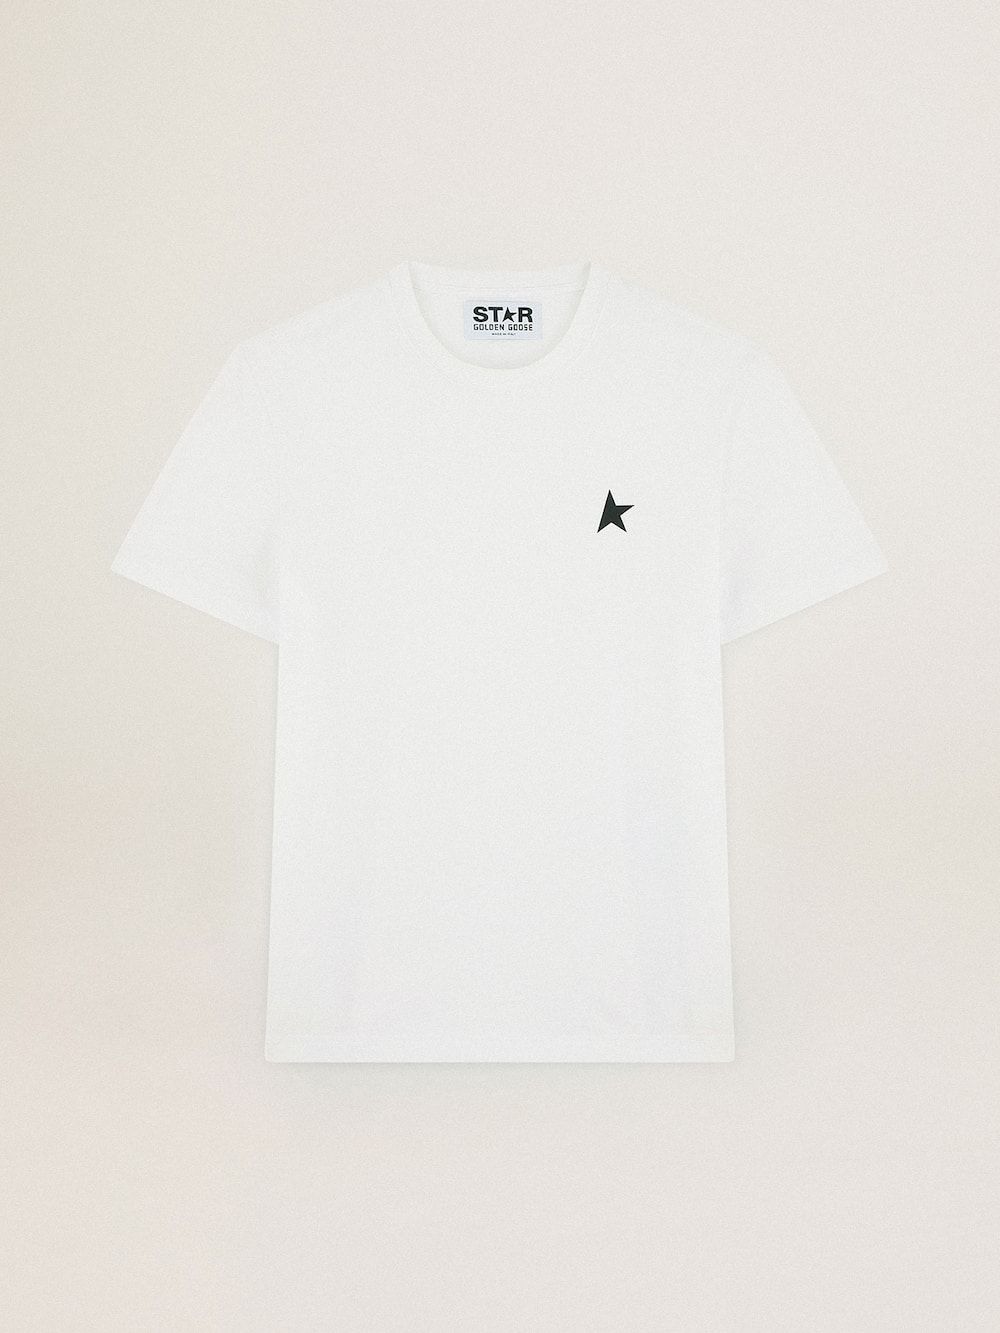 Golden Goose - Camiseta branca Coleção Star com estrela verde em contraste na frente in 